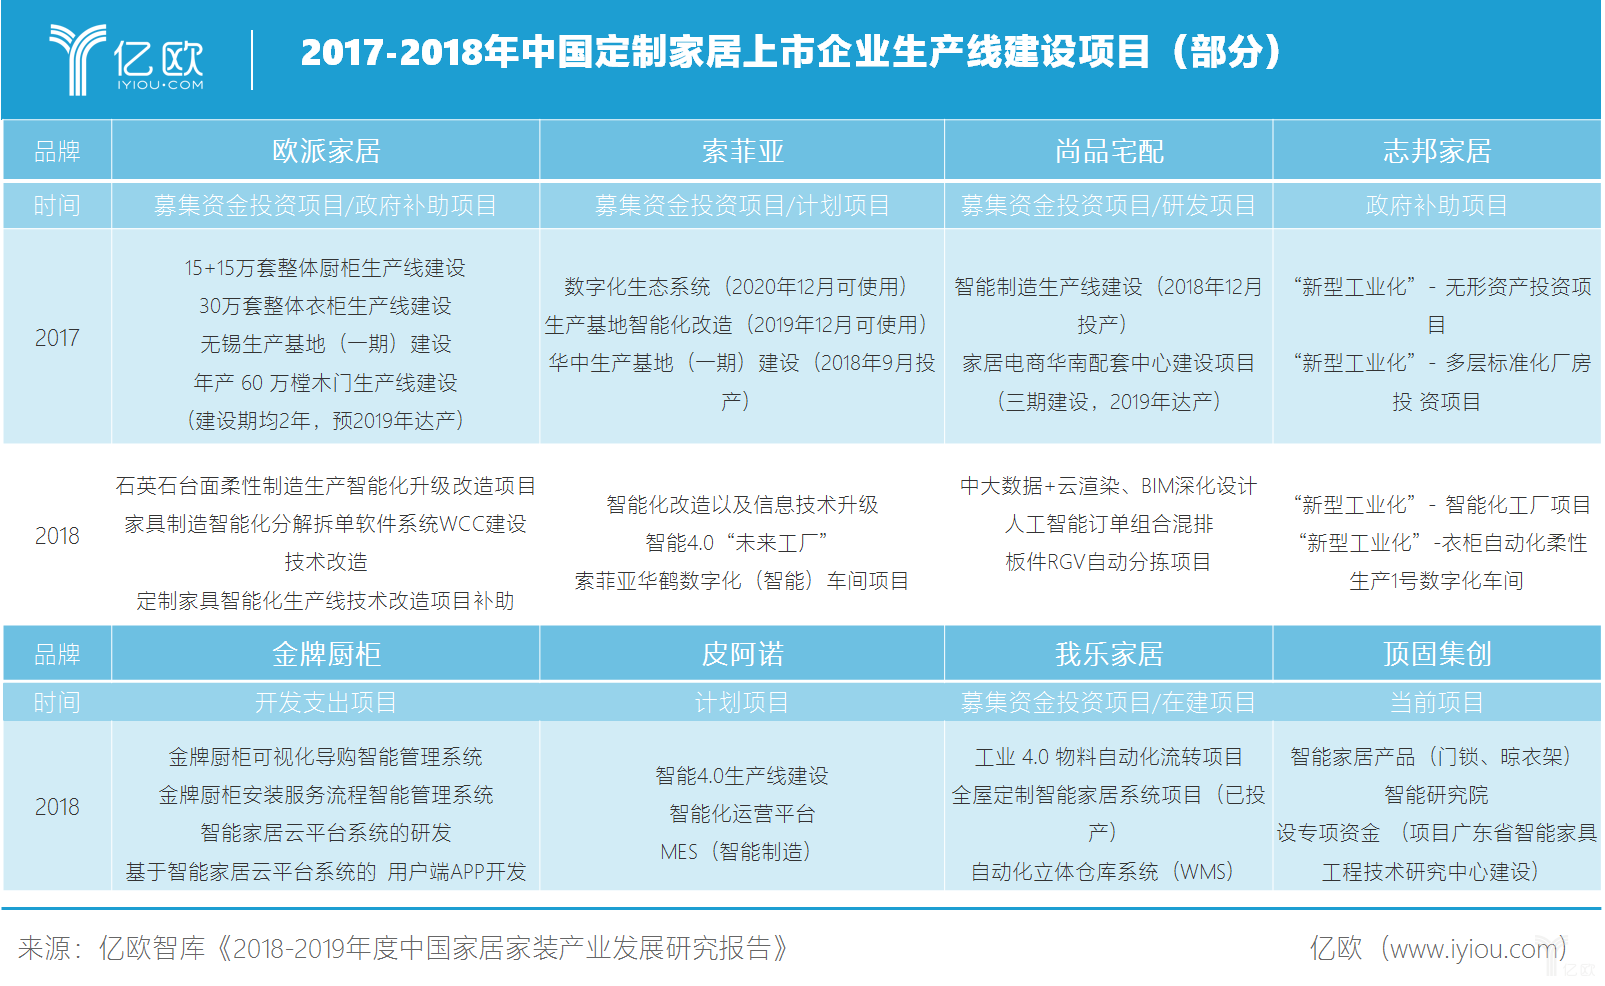 2017-2018中国定制家居上市企业生产线建设时间表